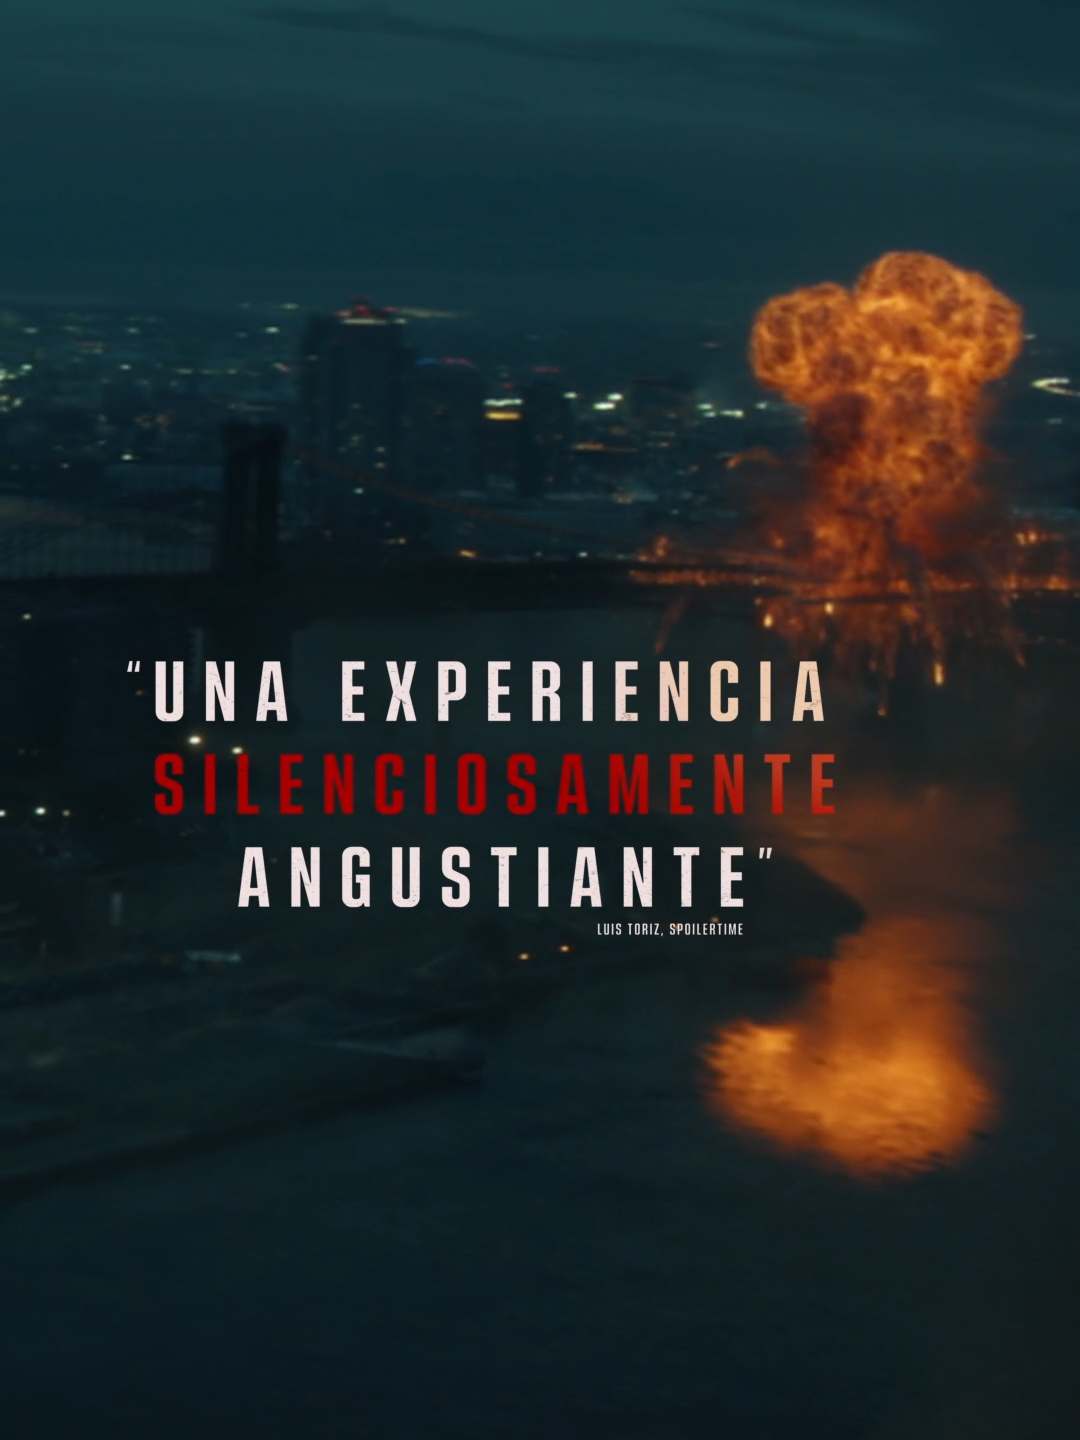 #UnLugarEnSilencioDíaUno es “emocionante, explosiva y satisfactoria